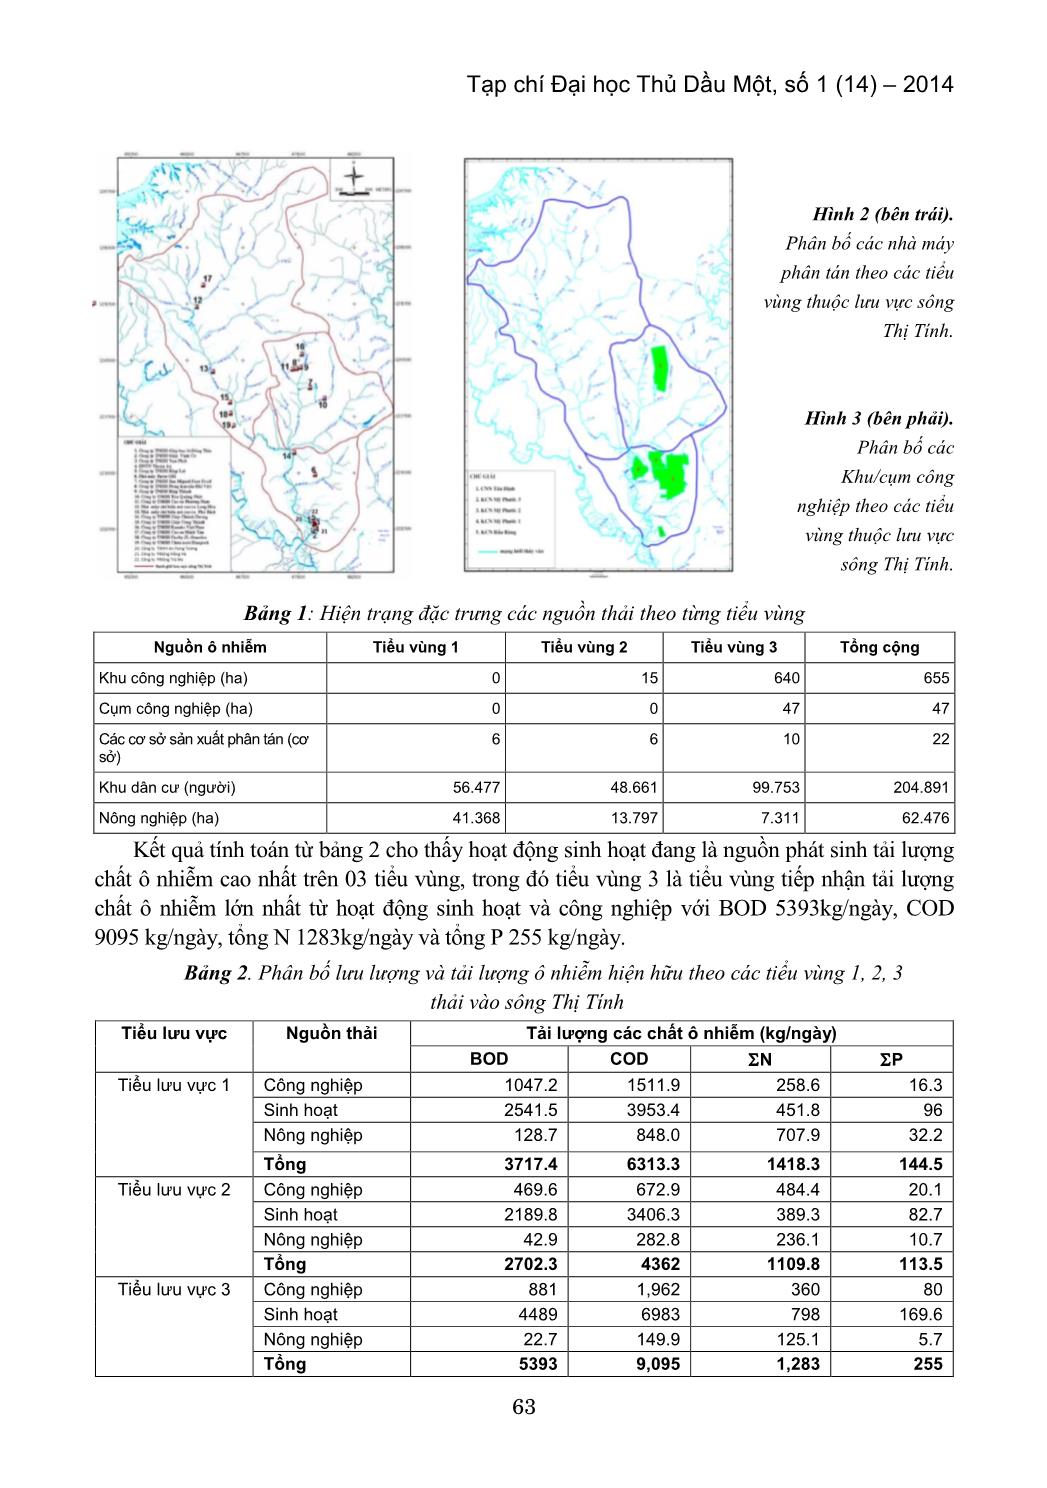 Đánh giá phân bố tải lượng ô nhiễm hữu cơ theo các tiểu vùng thuộc lưu vực sông Thị Tính trang 5